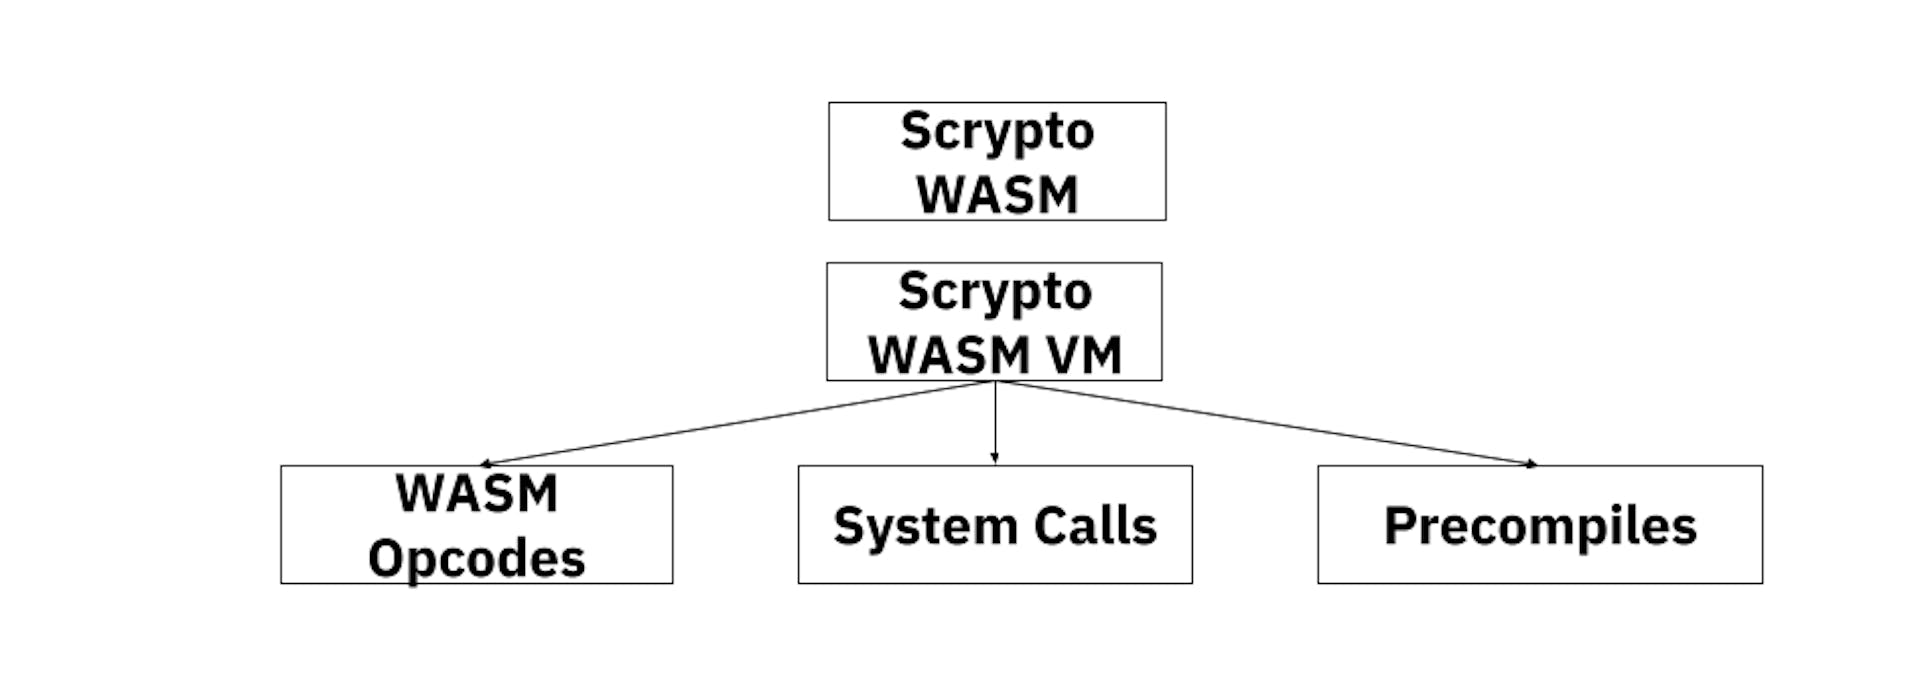 Modelo de VM criptografado WASM